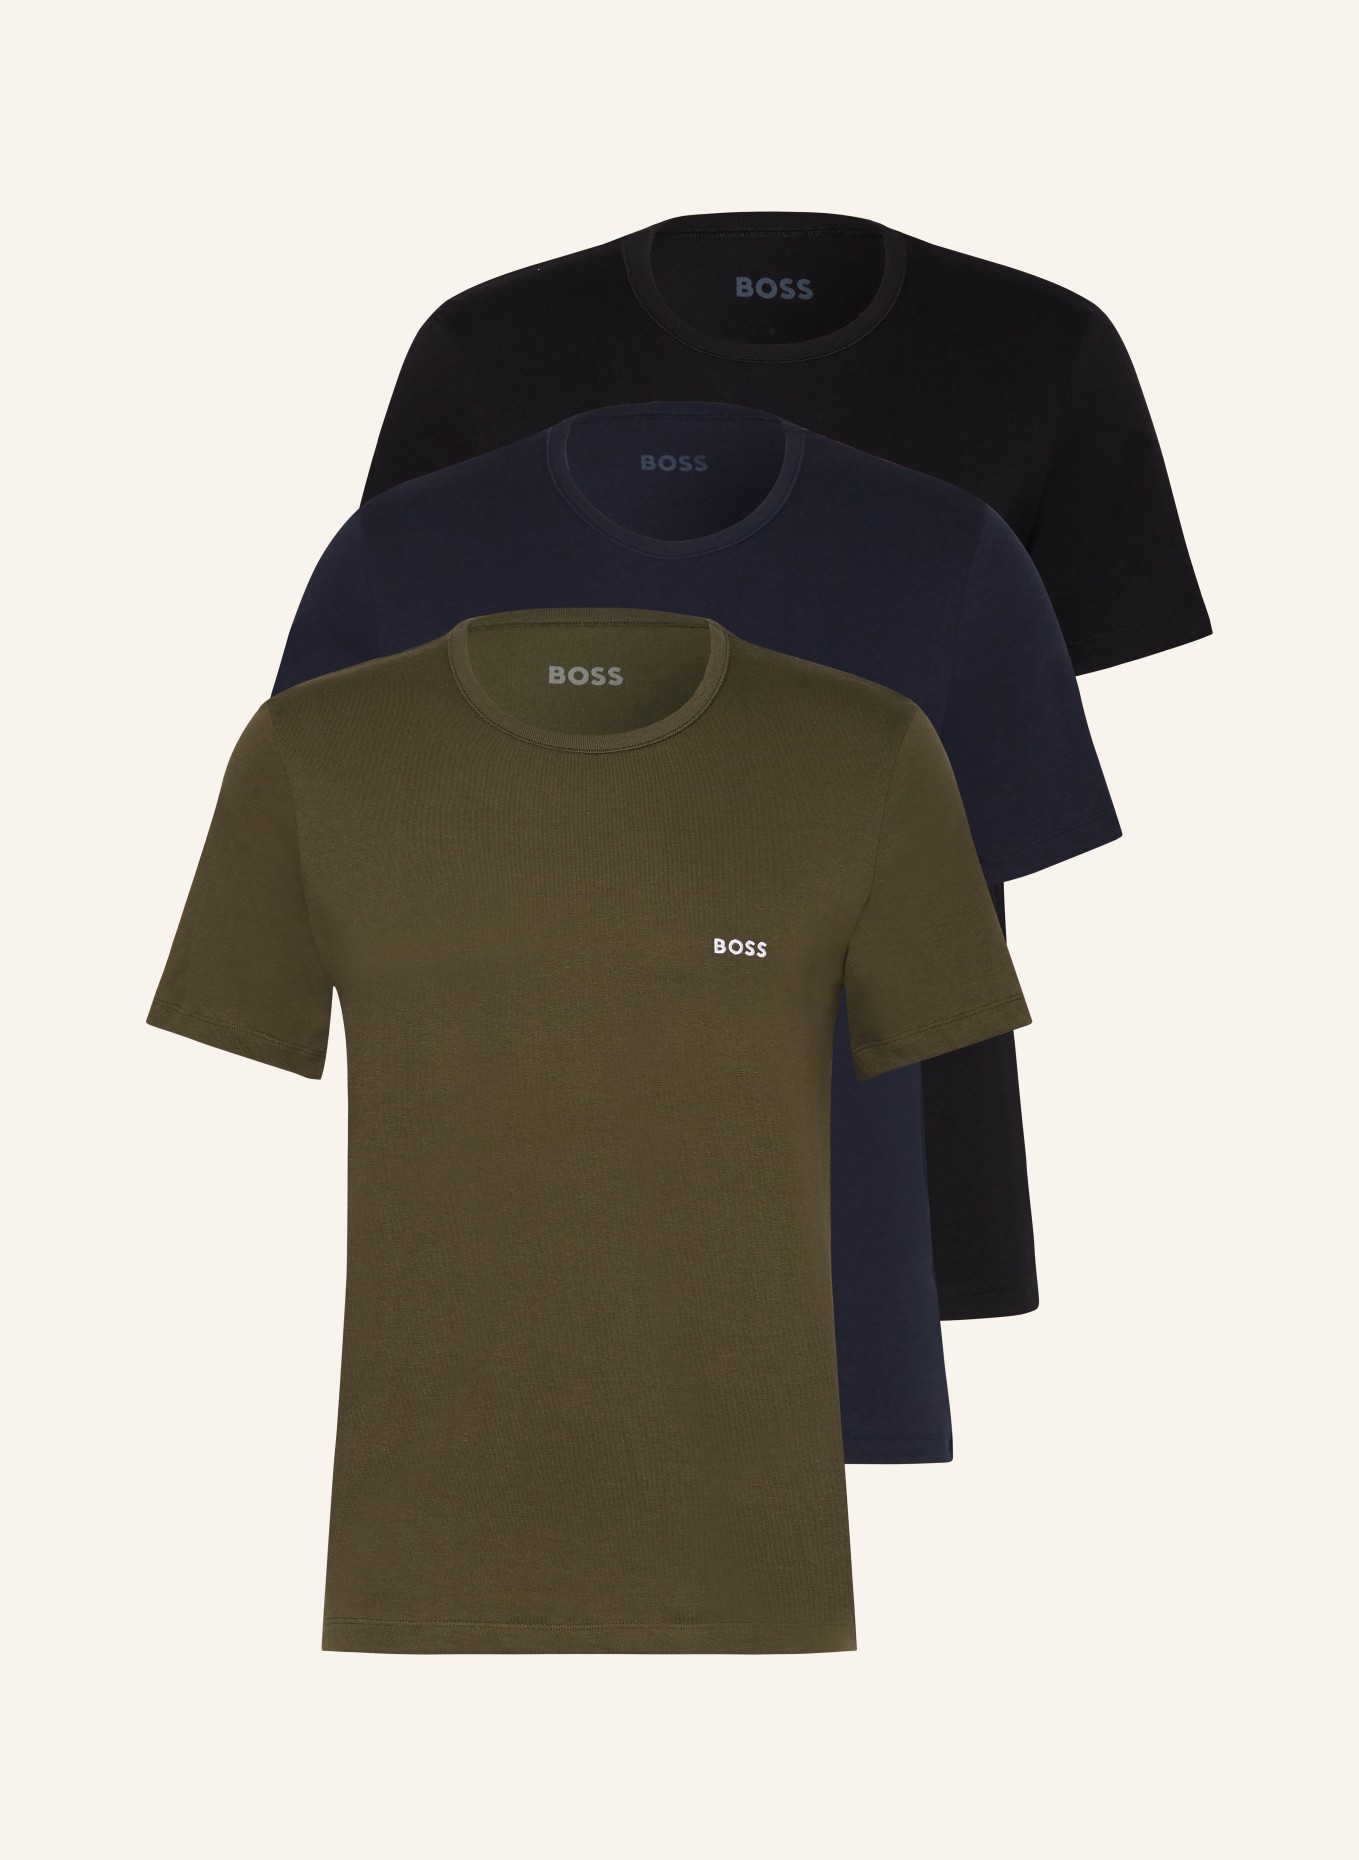 BOSS 3-pack T-shirts, Color: BLACK/ DARK BLUE/ OLIVE (Image 1)